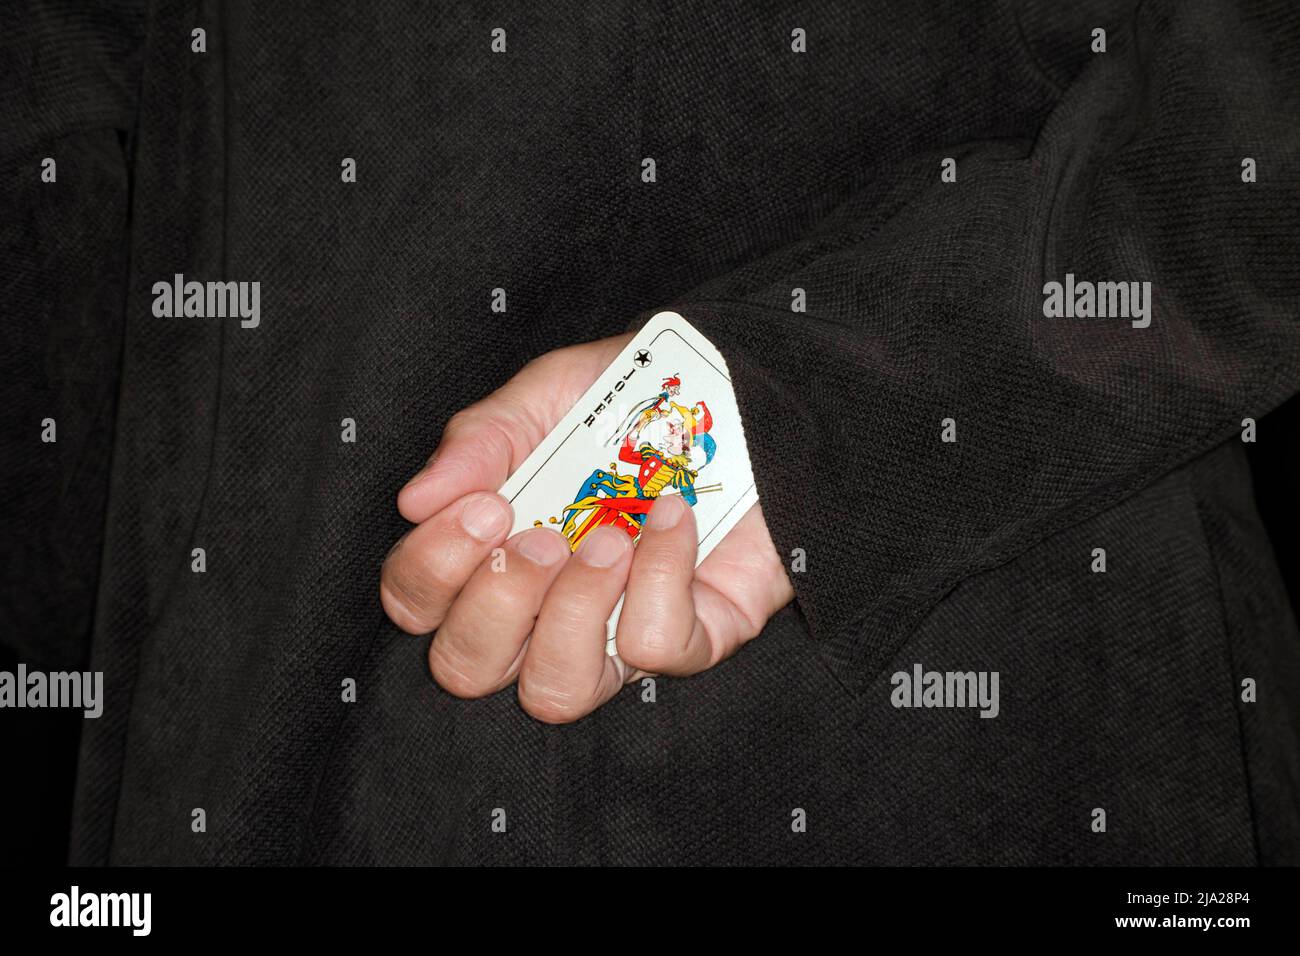 Carta da gioco, barare, simbolo barare, simbolo immagine per un altro scherzo in su la vostra manica Foto Stock